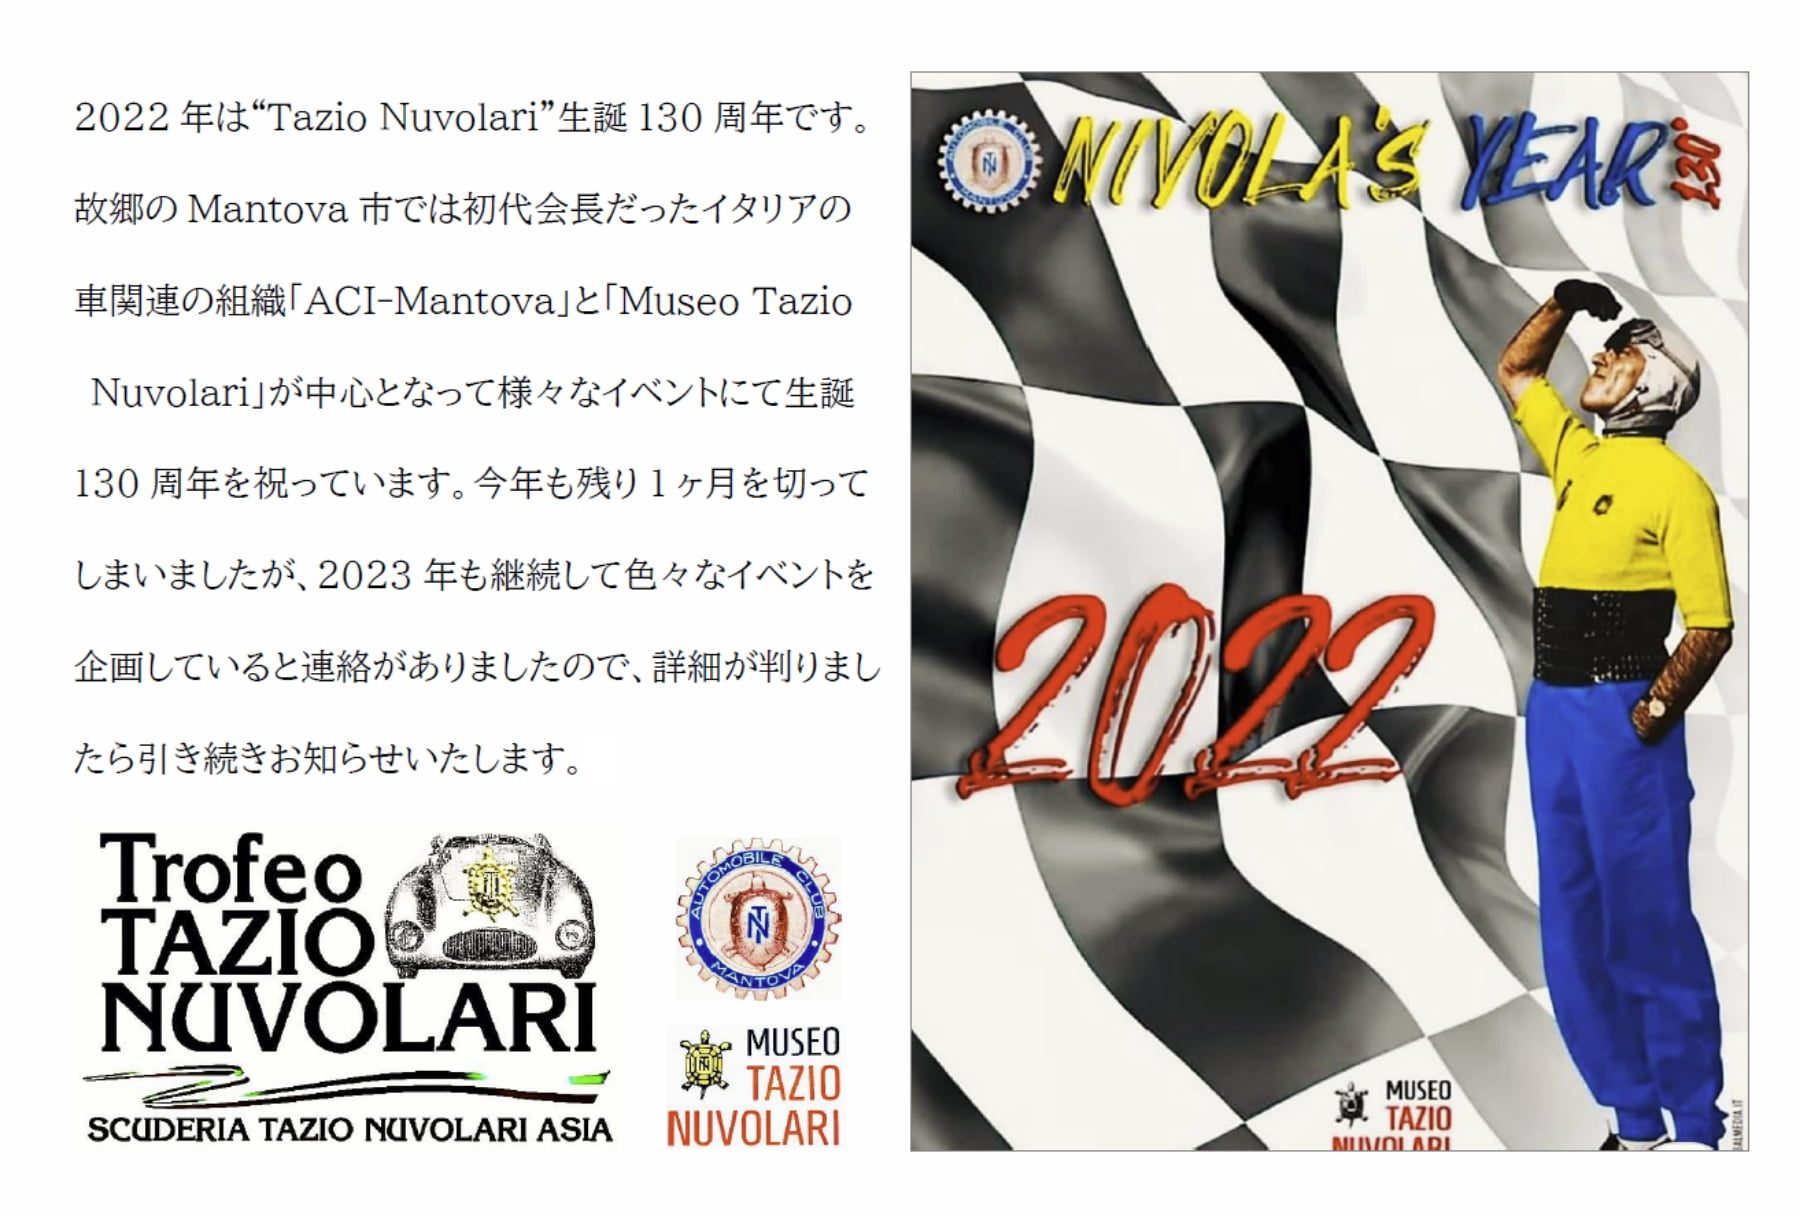 2022 年は“Tazio Nuvolari”生誕130 周年